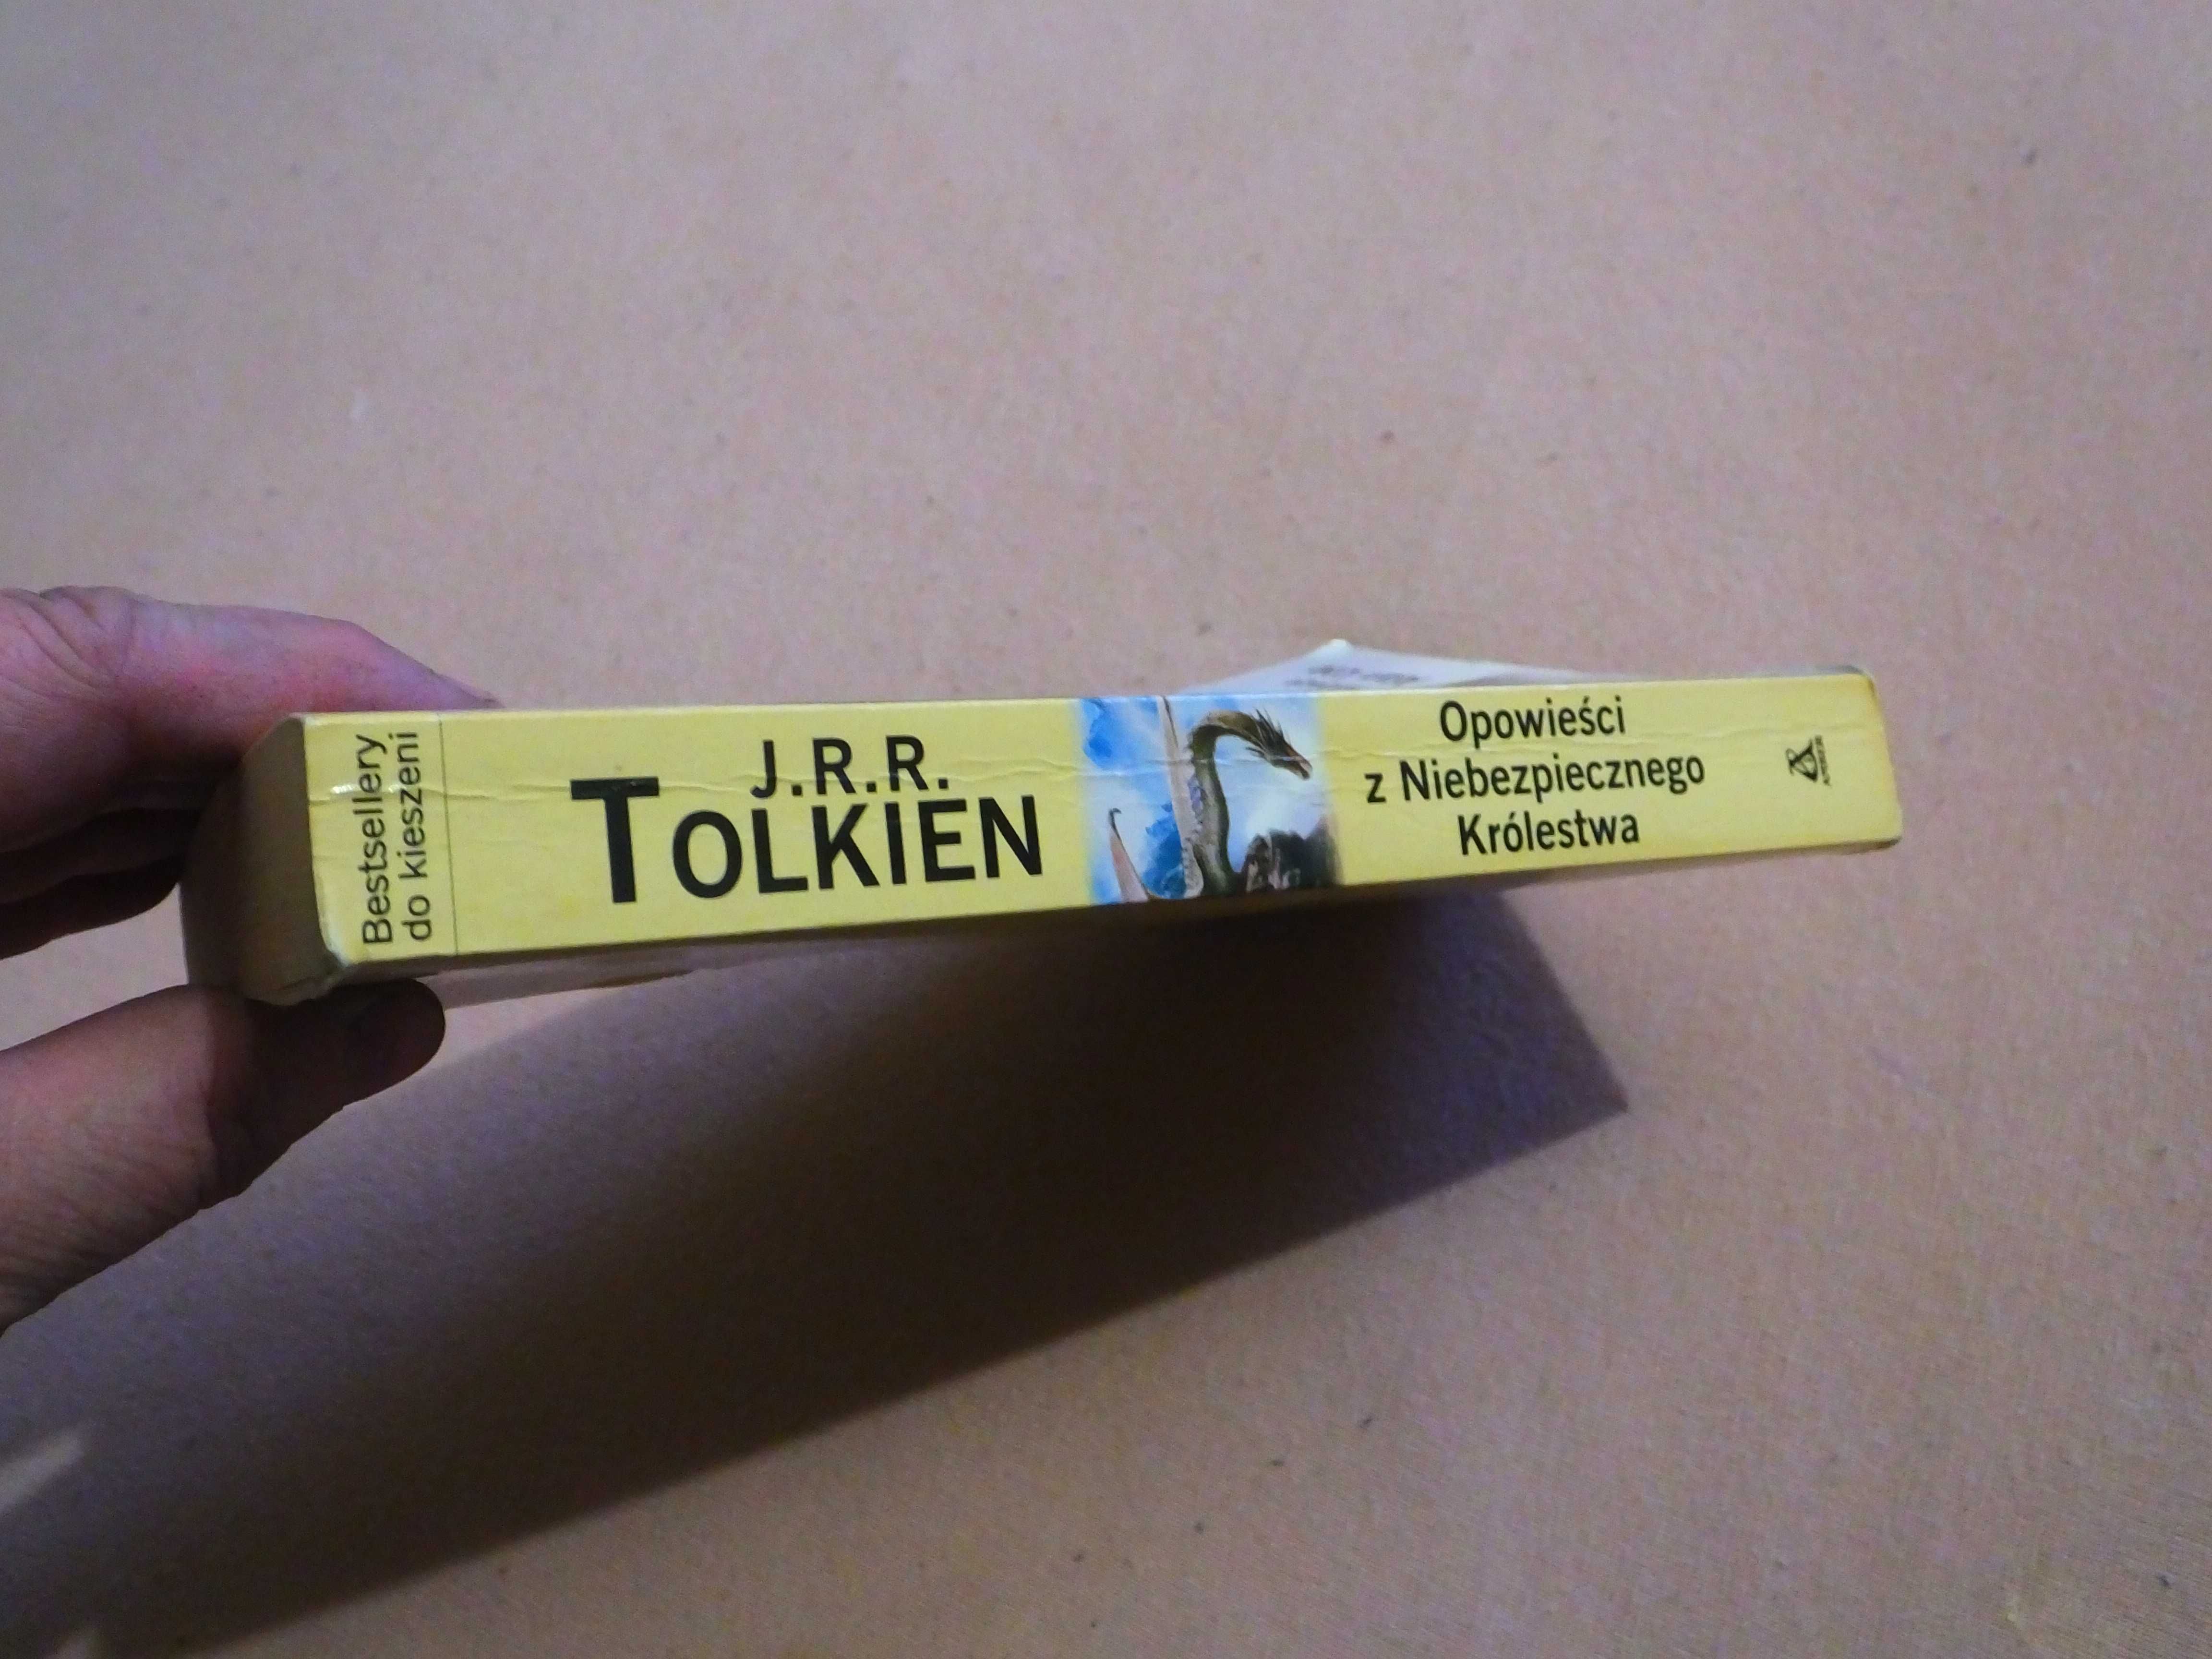 Książka "Opowieści z Niebezpiecznego Królestwa" - J.R.R. Tolkien